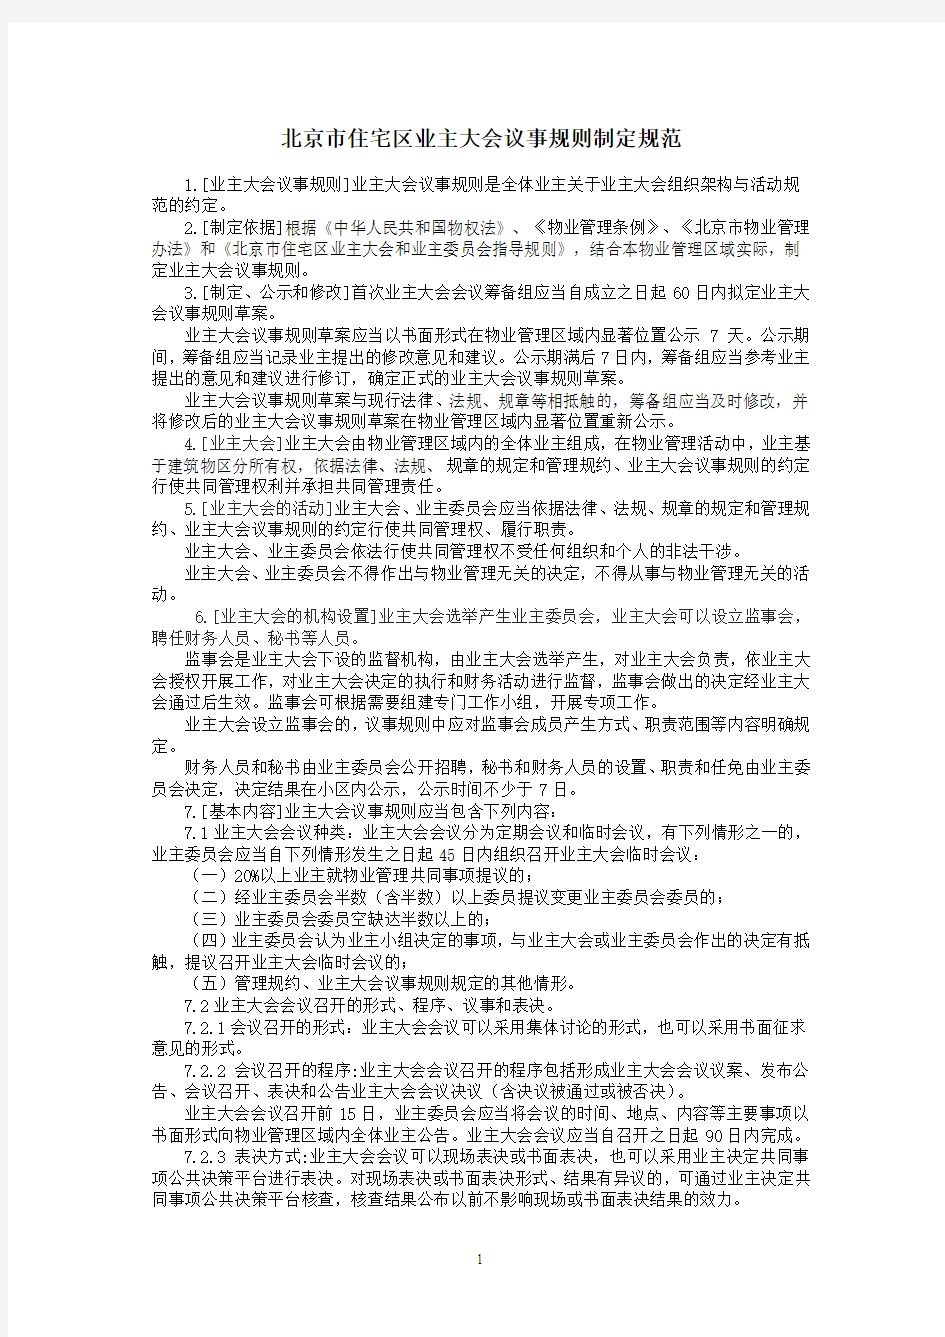 28-北京市住宅区业主大会议事规则制定规范